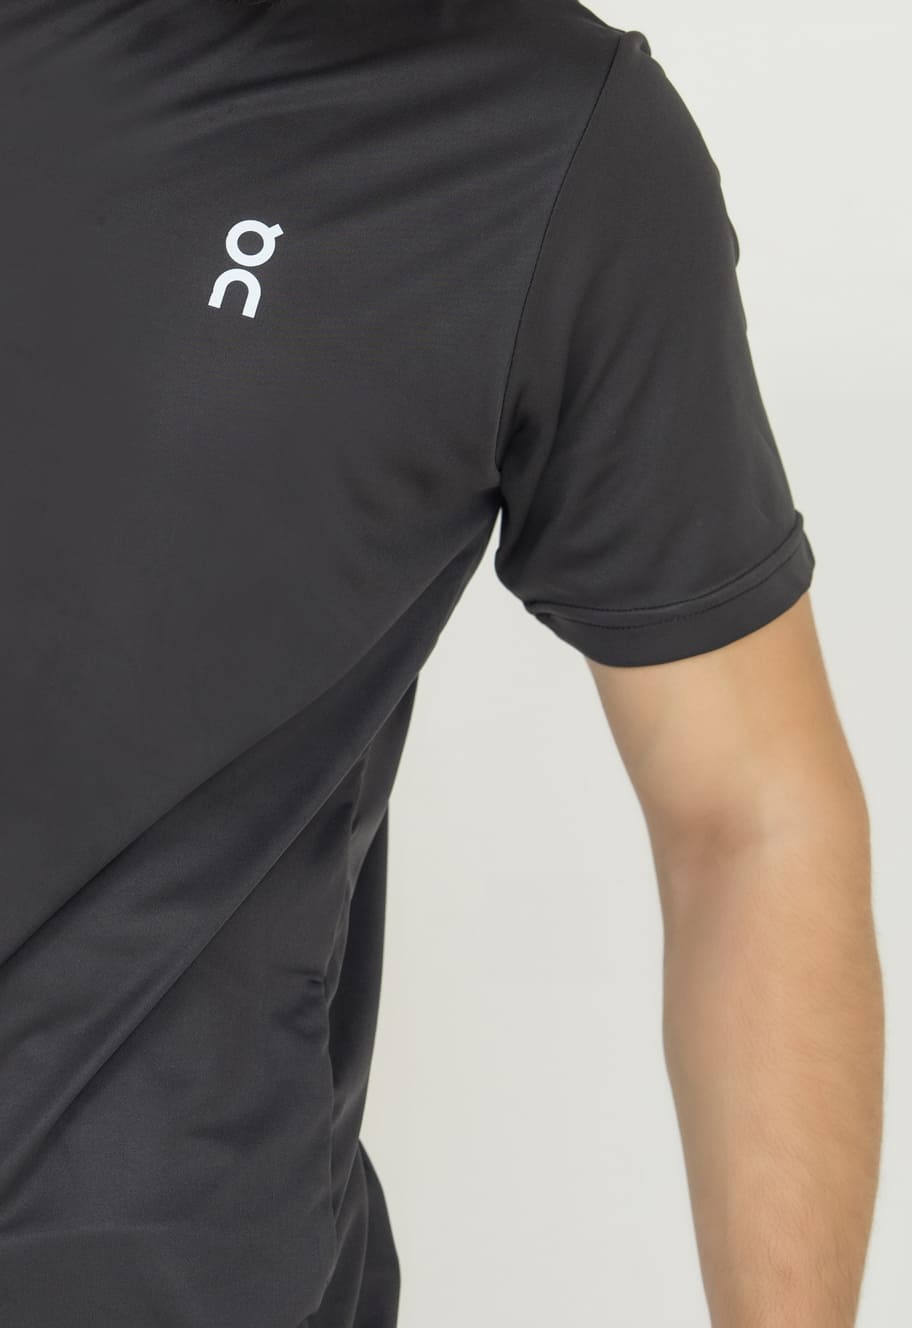 OnRun  Activewear T-shirt For Men-2277